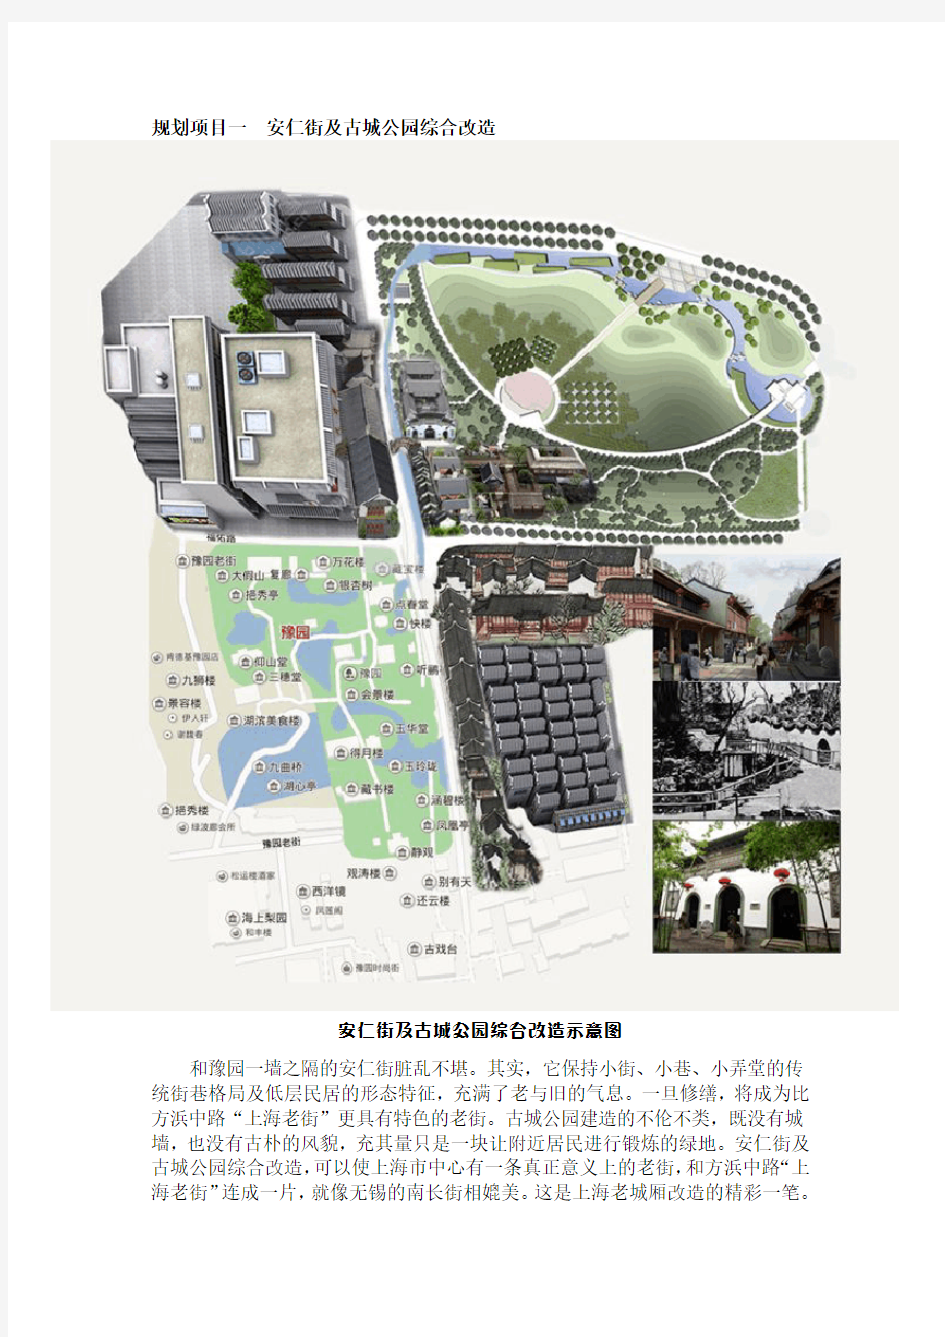 上海老城厢详细规划介绍